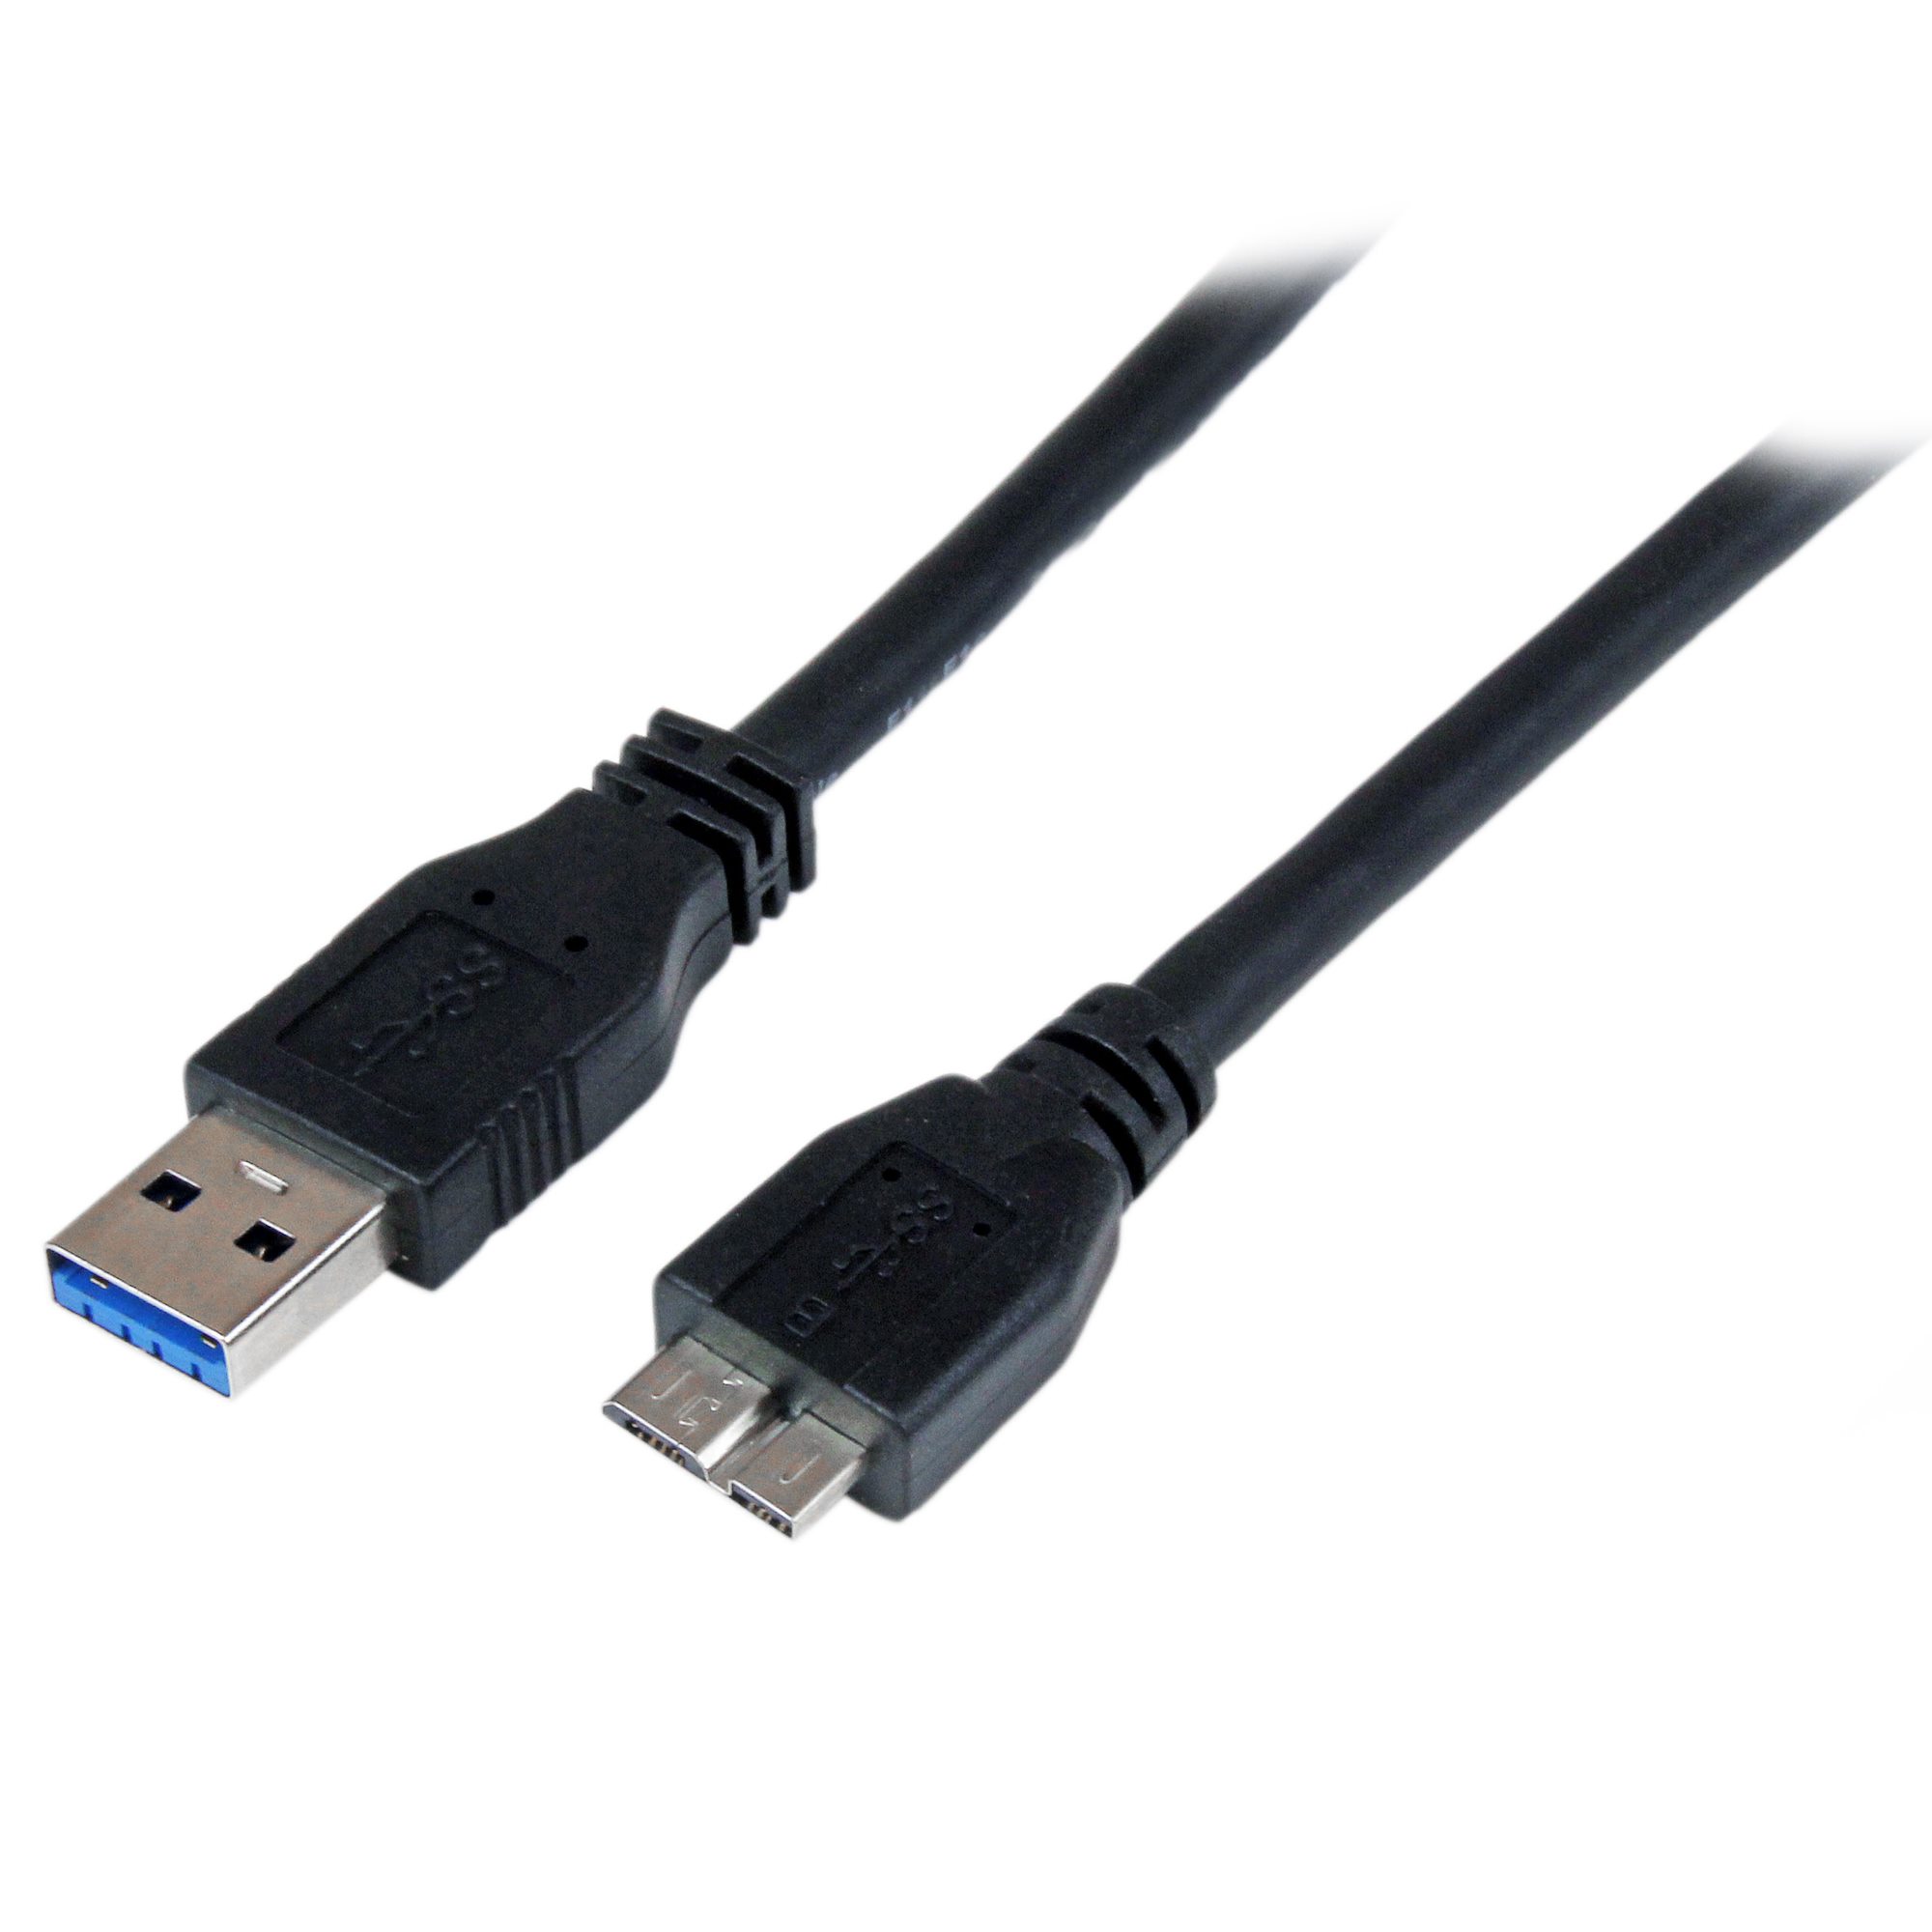 Verniel West Discipline 1m 3 ft Certified USB 3.0 Micro B cable - USB 3.0 Cables | StarTech.com